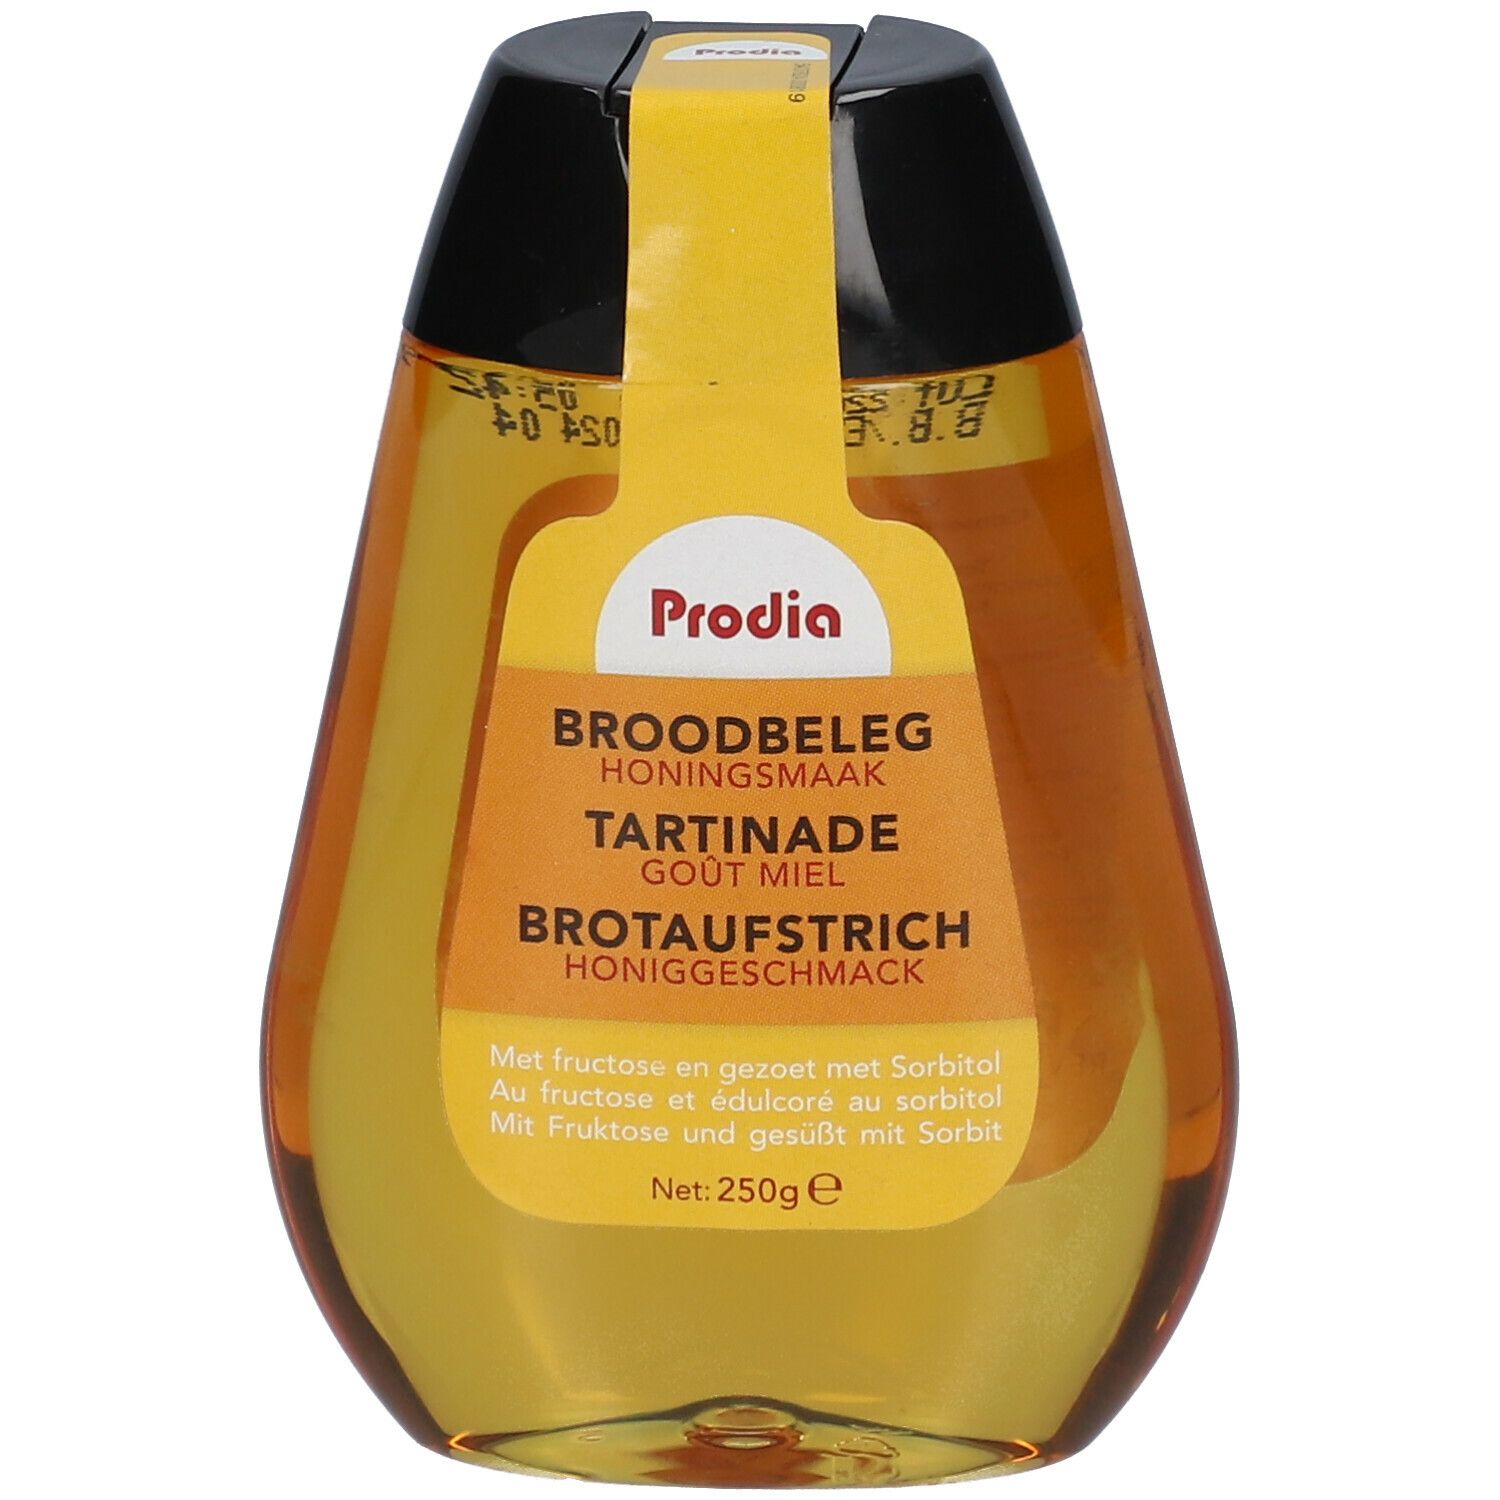 Image of Prodia Brotaufstrich Honiggeschmack